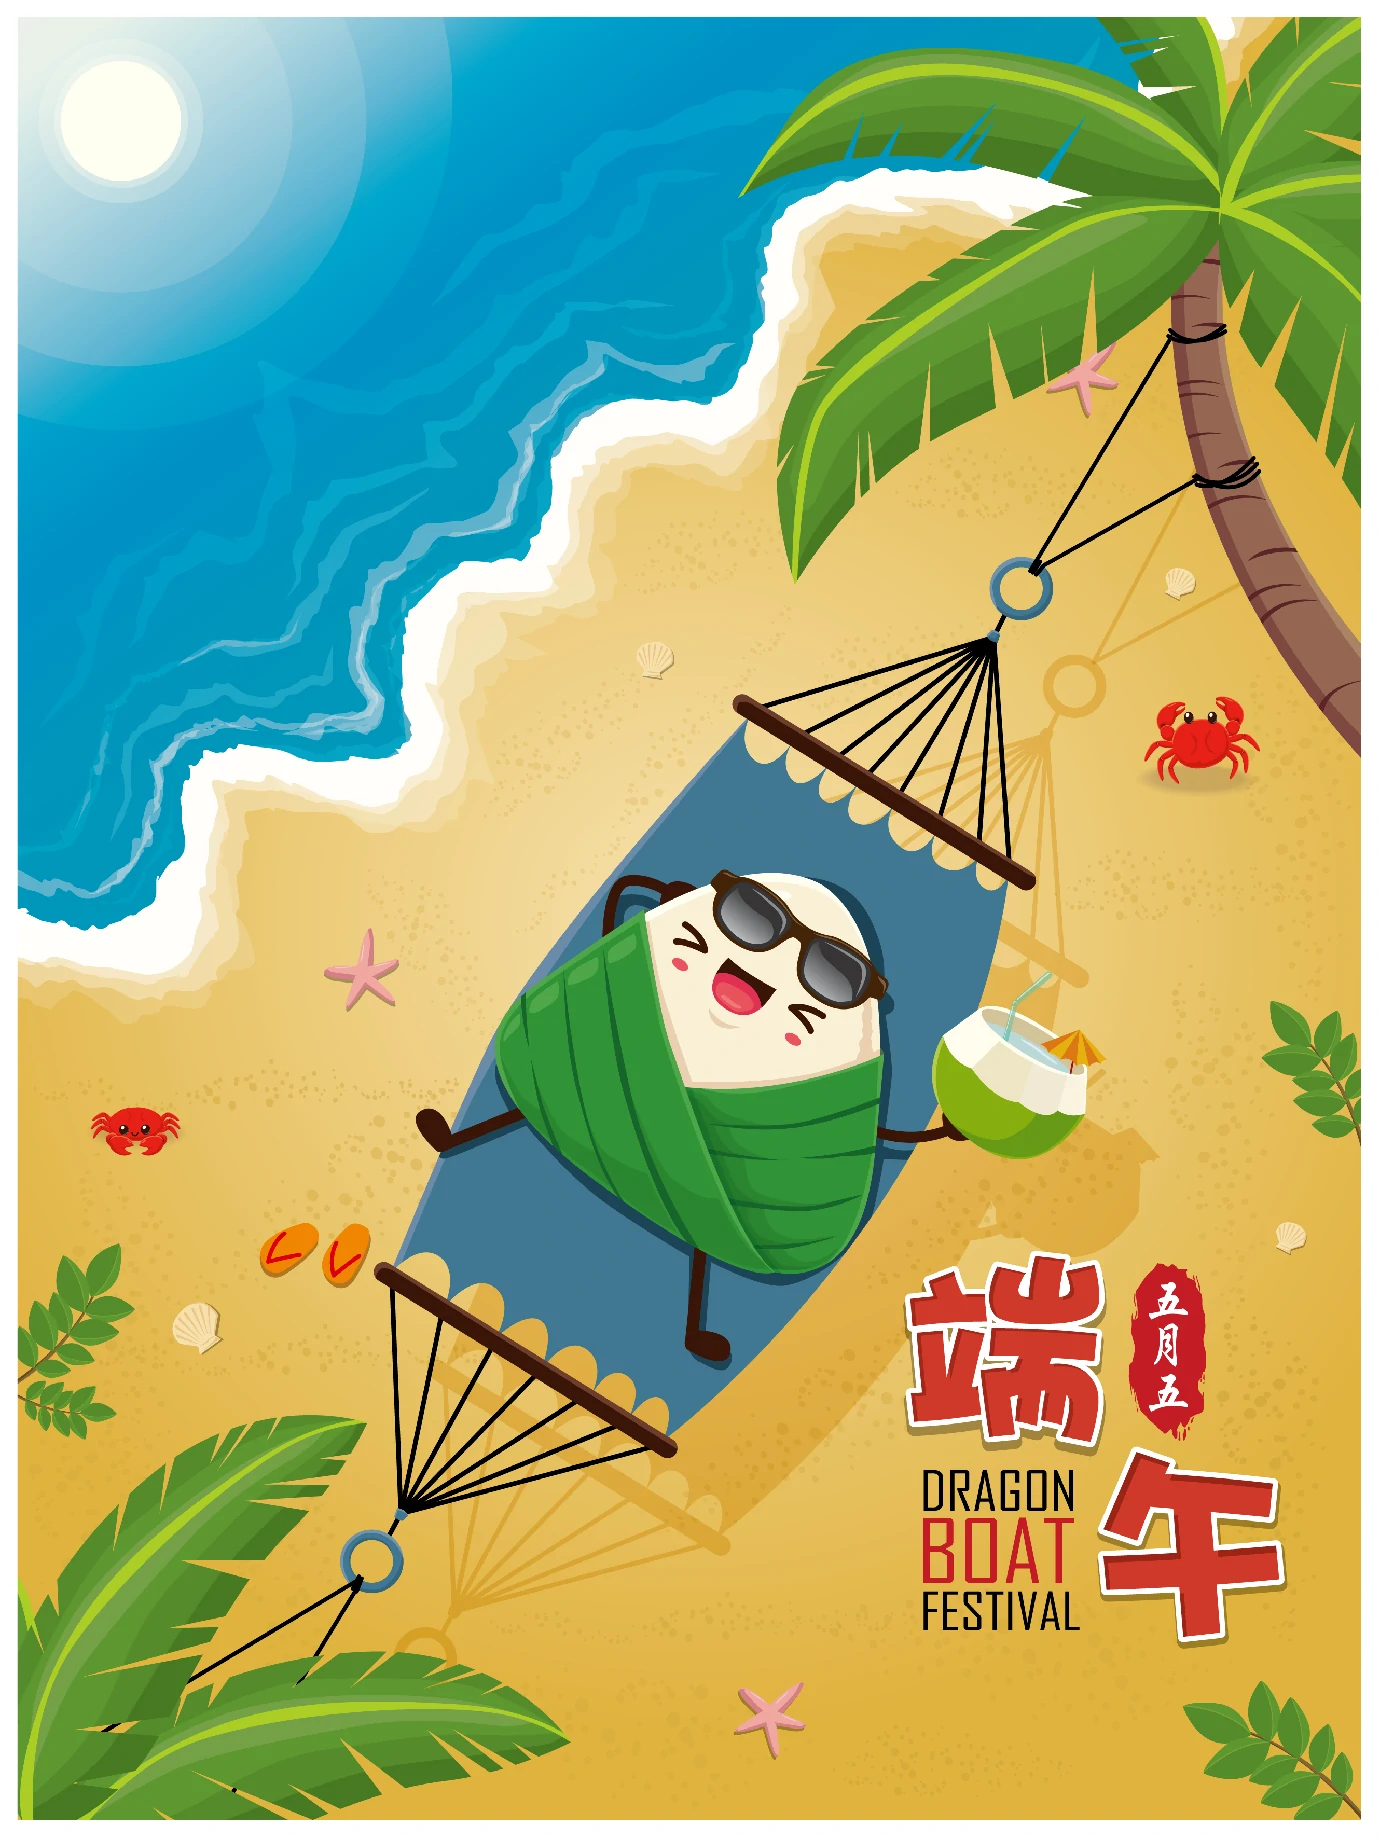 中国传统节日卡通手绘端午节赛龙舟粽子插画海报AI矢量设计素材【077】